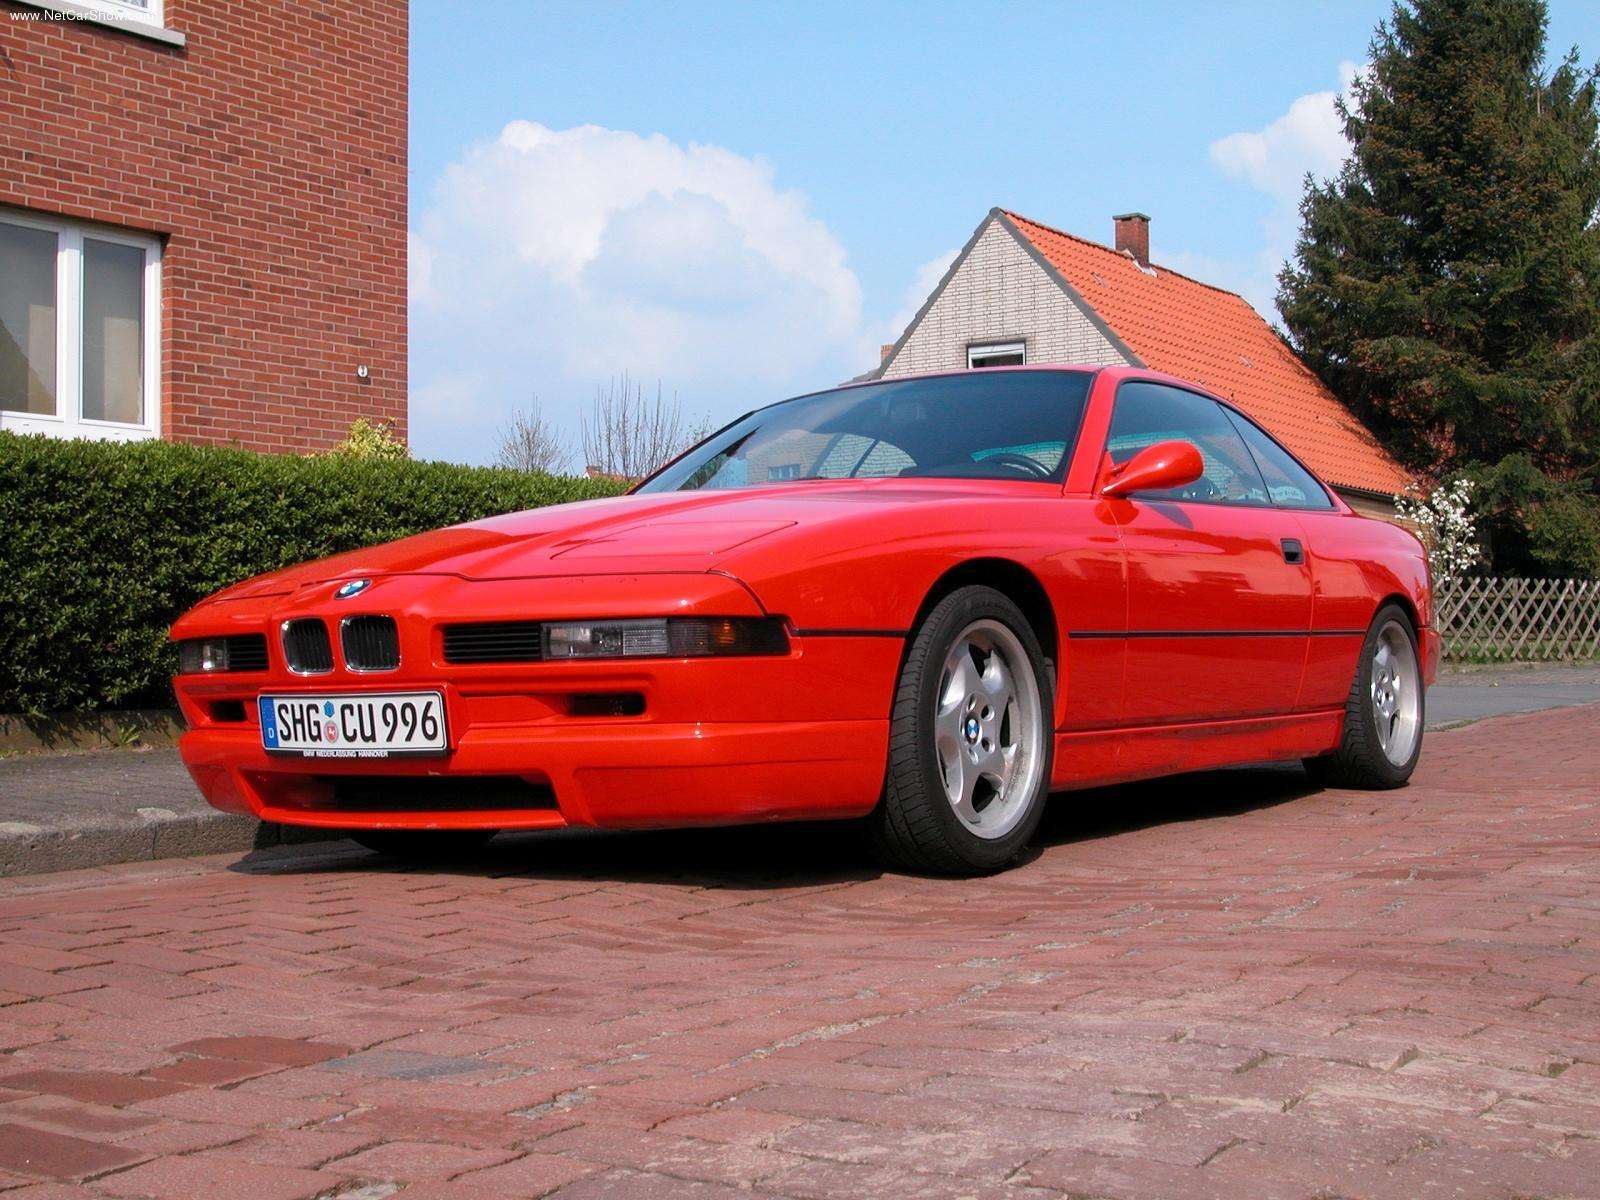 BMW-850CSi 1992 #02.jpg. Date: 09/06/2008. Size: 640x480, 1600x1200